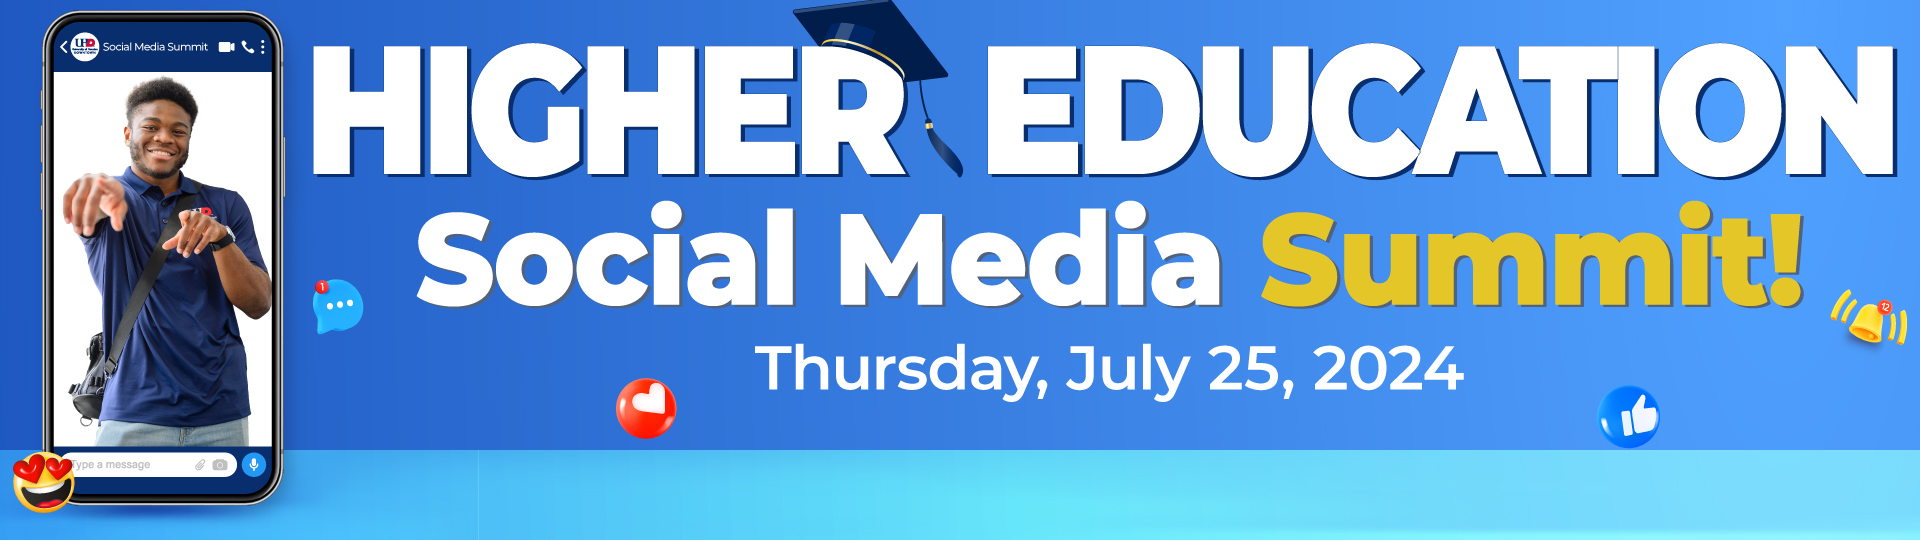 Higher Education Social Media Summit